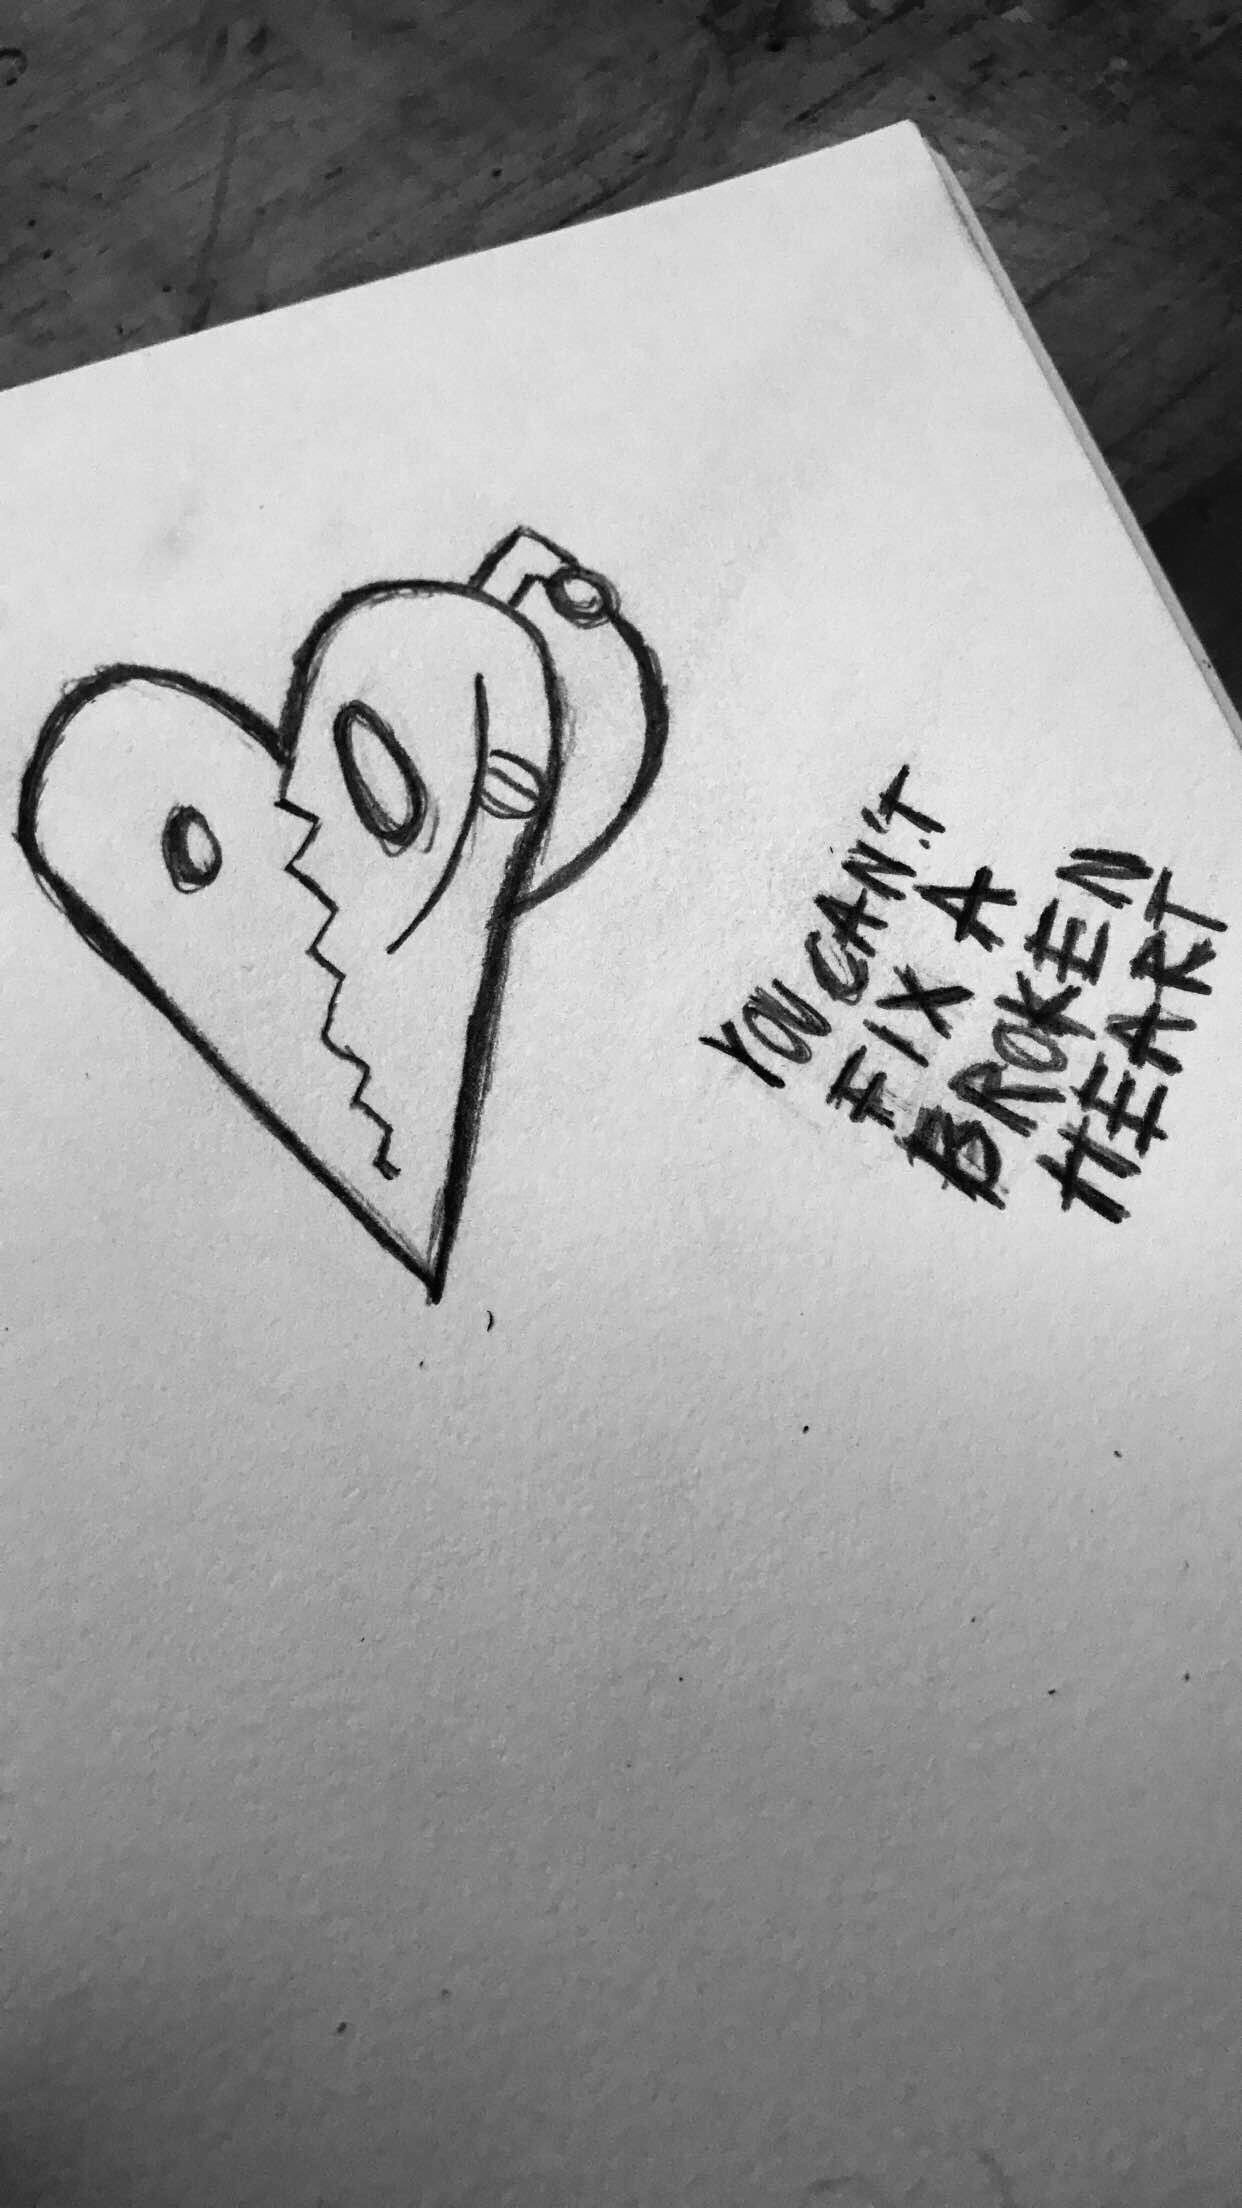 Xxxtentacion Broken Heart Tattoo Wallpapers